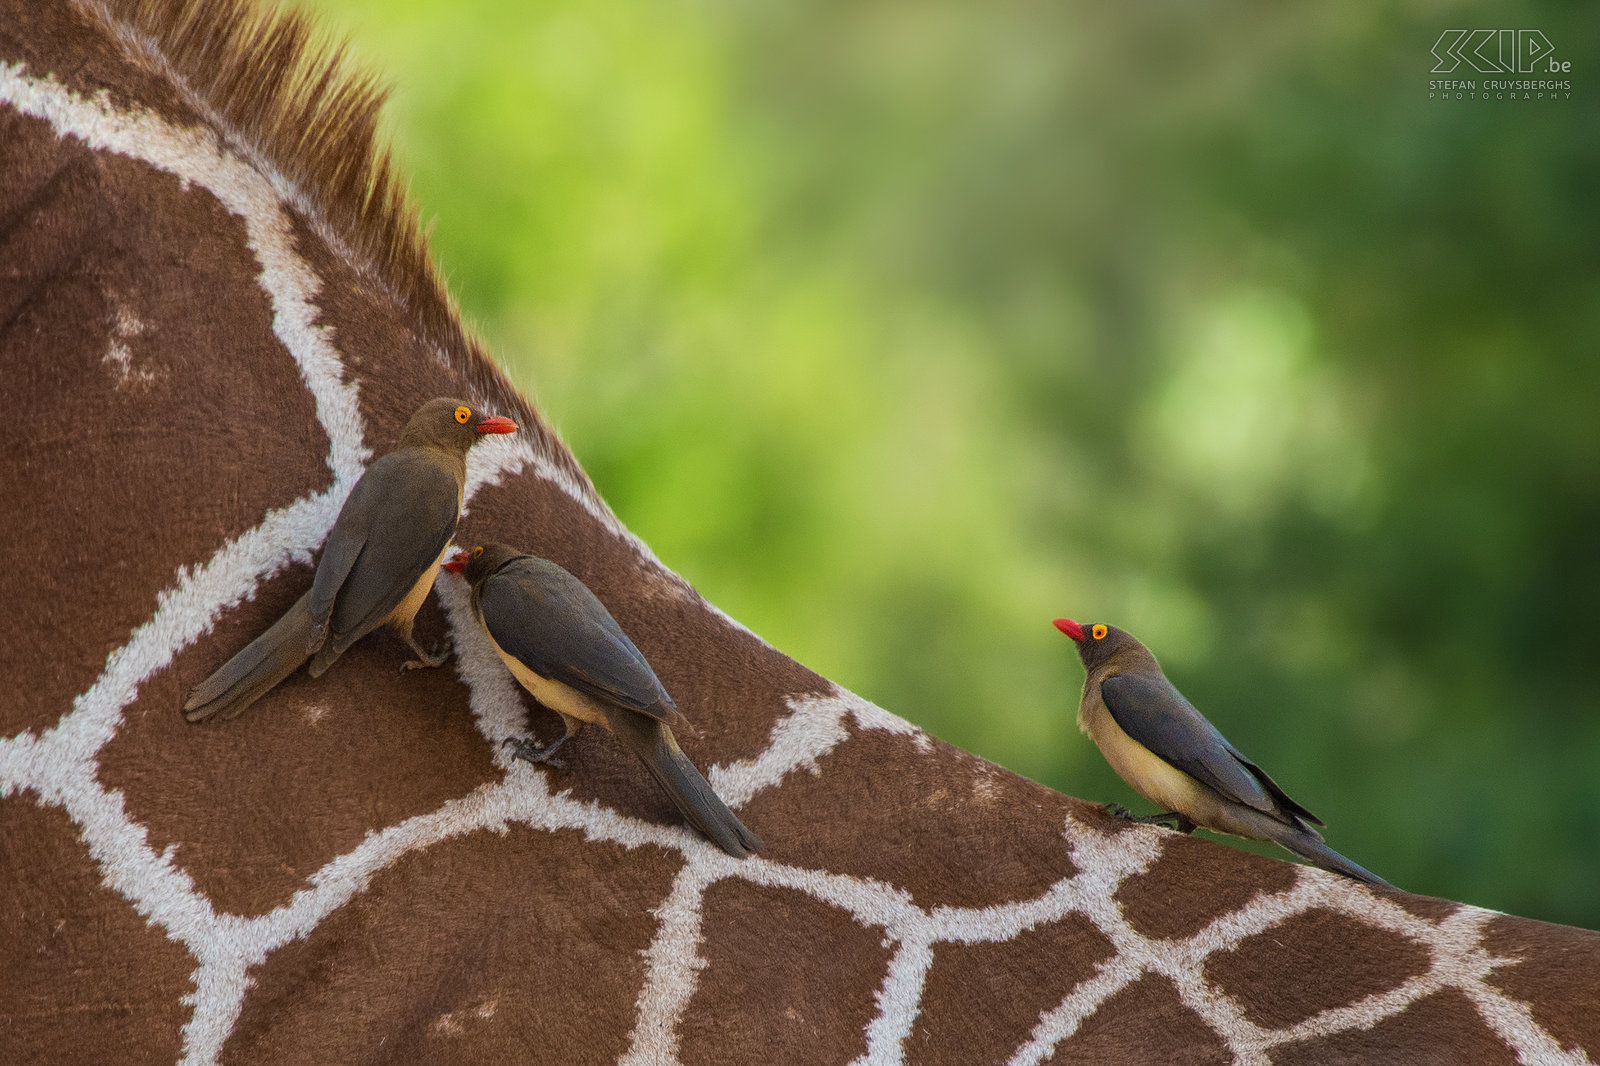 Samburu - Roodsnavelossenpikkers Roodsnavelossenpikkers op de rug van een giraf. De roodsnavelossenpikker (Buphagus erythrorhynchus) is een zangvogel die zich voedt met teken, larven en parasieten die op andere dieren zoals giraffen, buffels, antilopen, ... zitten. Ze houden ook van bloed en daarom pikken ze in de wonden van zoogdieren om ze open te houden. Stefan Cruysberghs